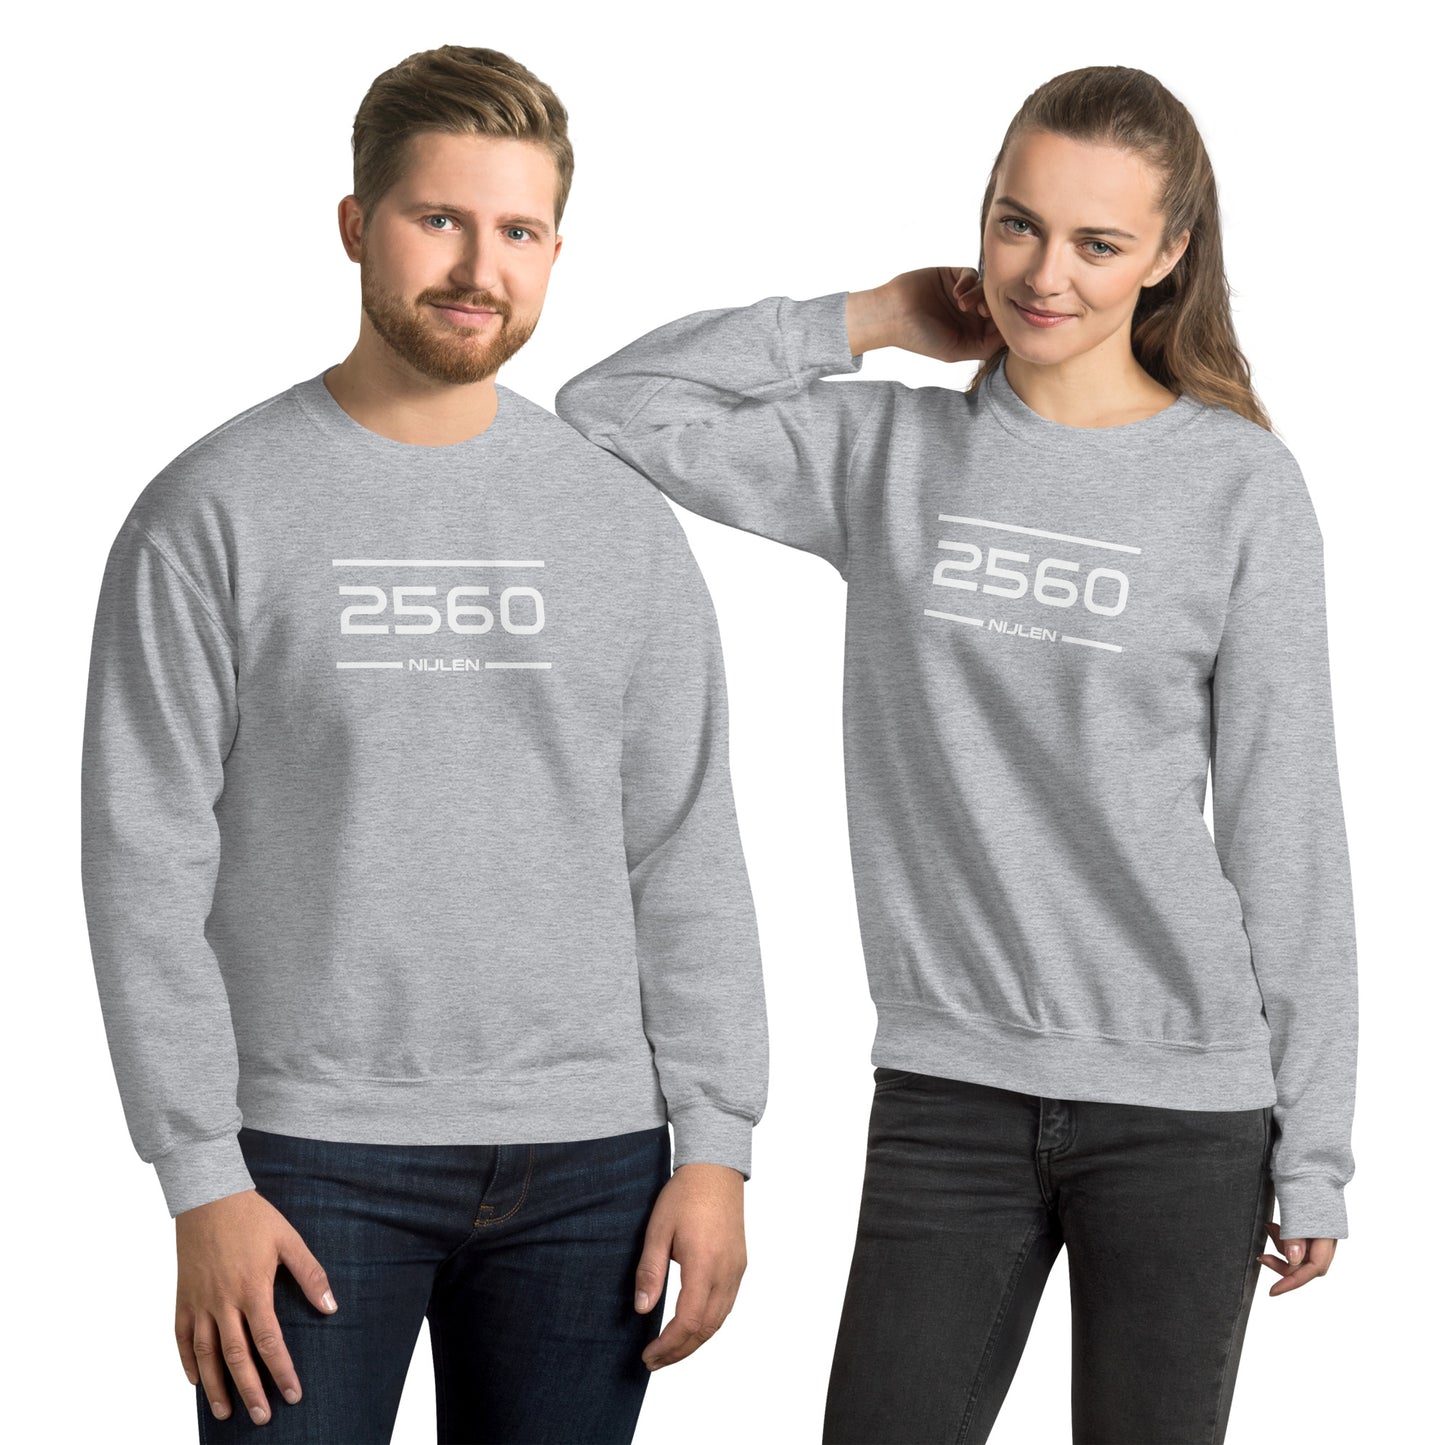 Sweater - 2560 - Nijlen (M/V)